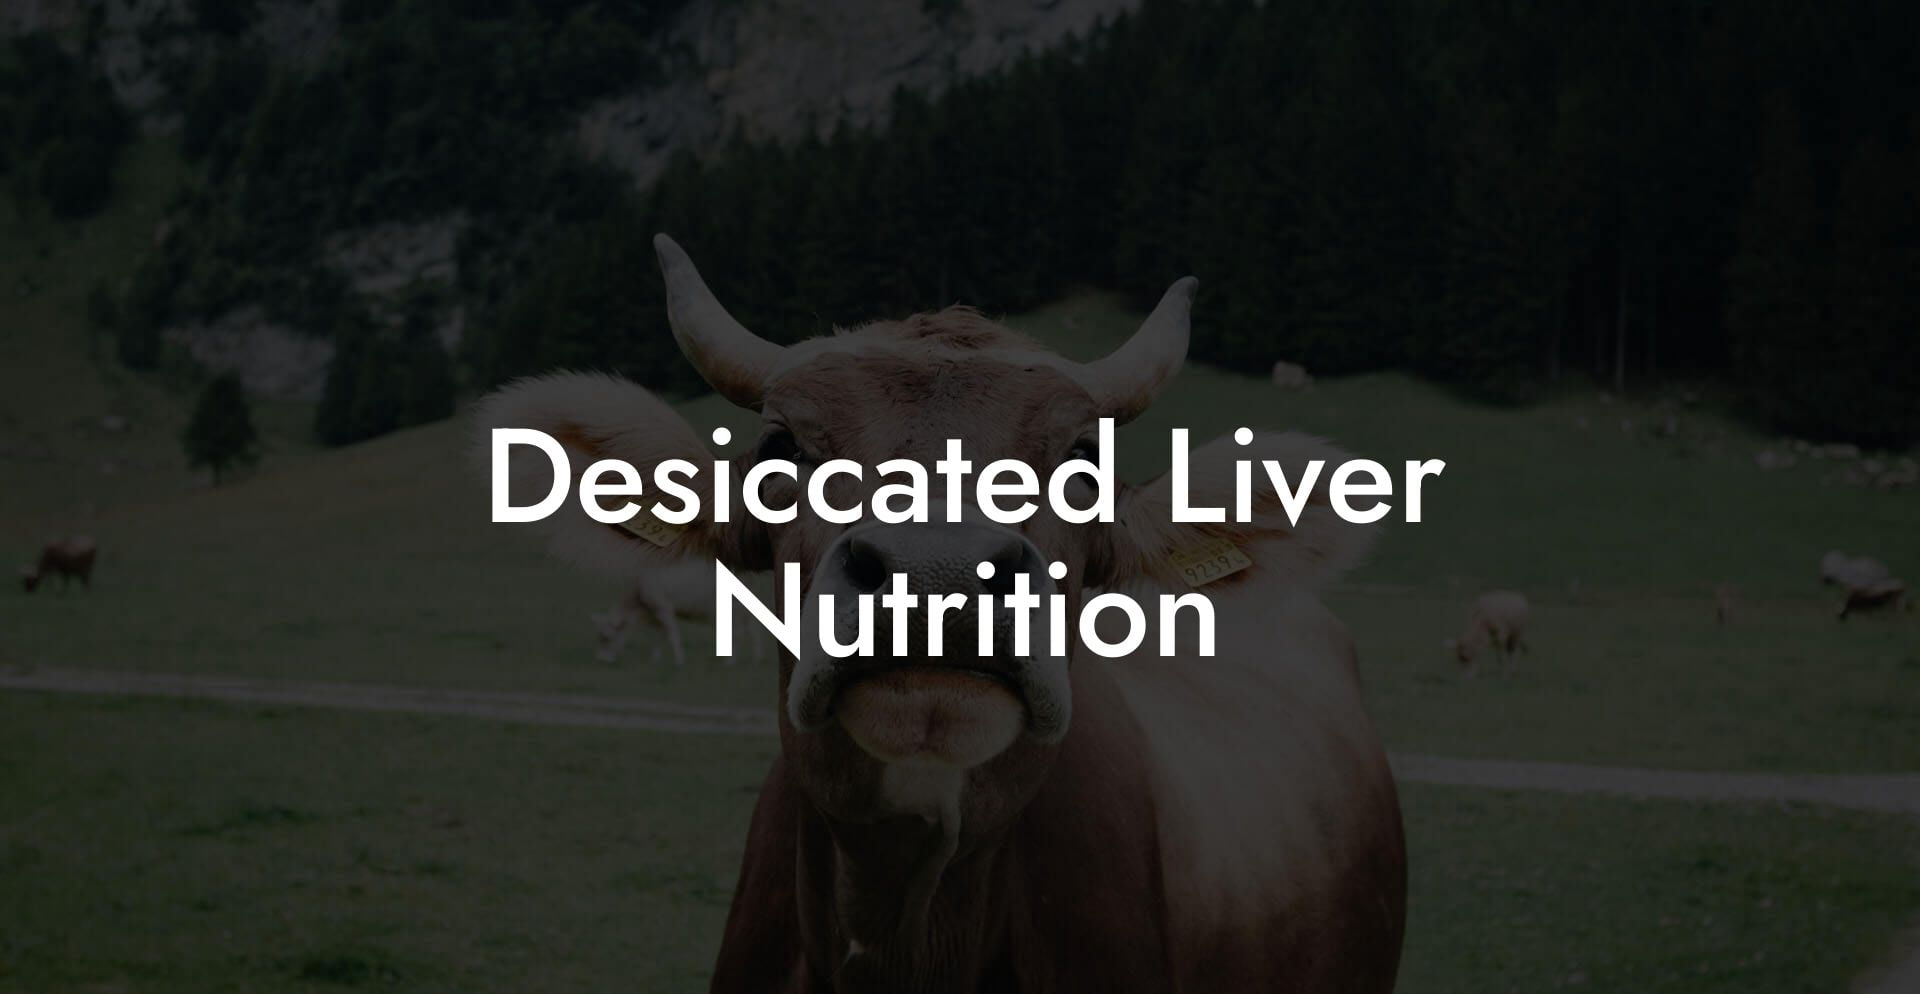 Desiccated Liver Nutrition